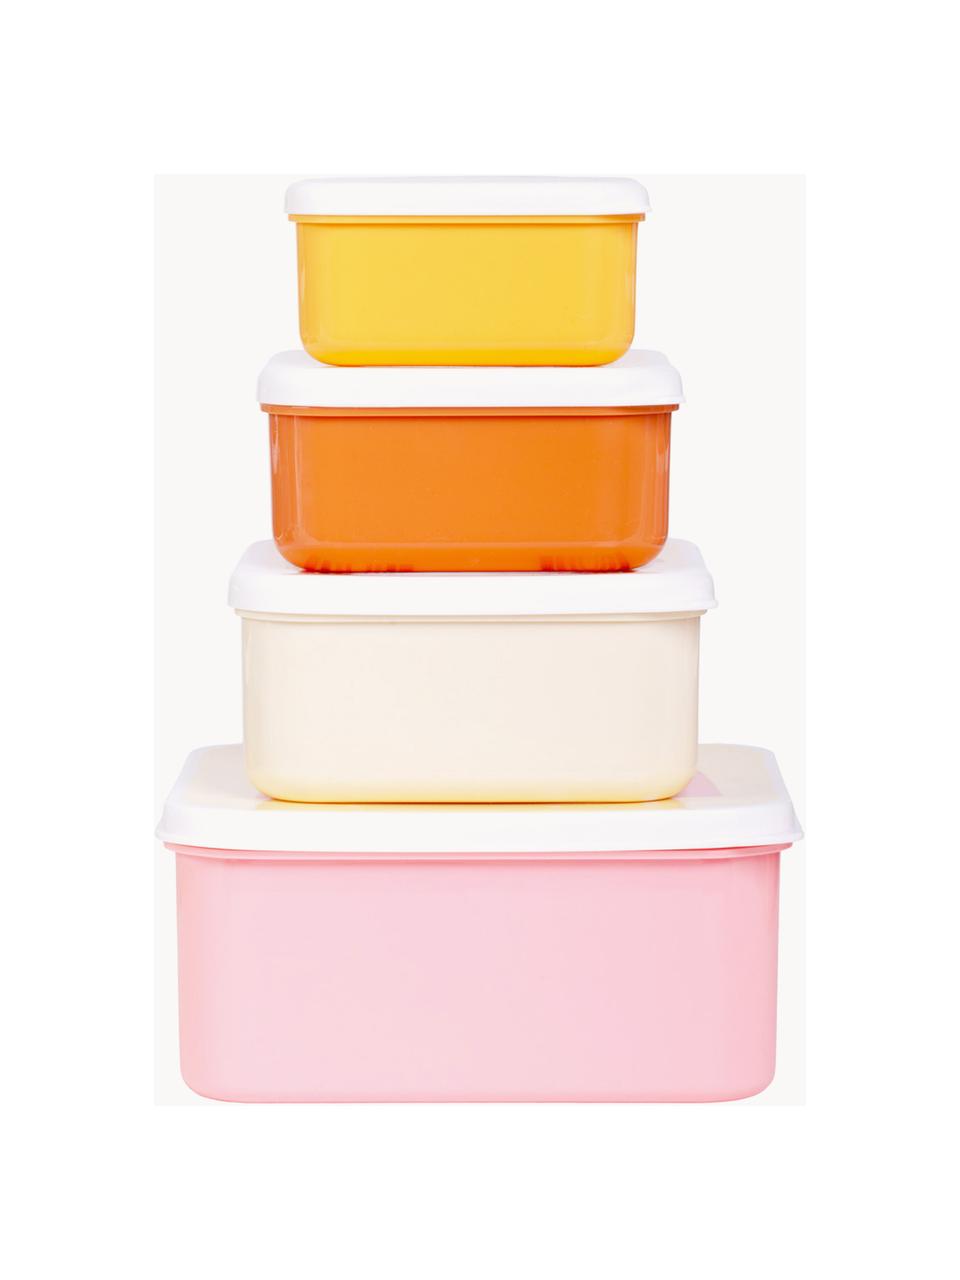 Sada dětských krabiček na jídlo Rainbows, 4 díly, Umělá hmota, bez BPA a ftalátů, bezpečný pro potraviny, testováno LFGB, Světle žlutá, světle růžová, více barev, Sada s různými velikostmi